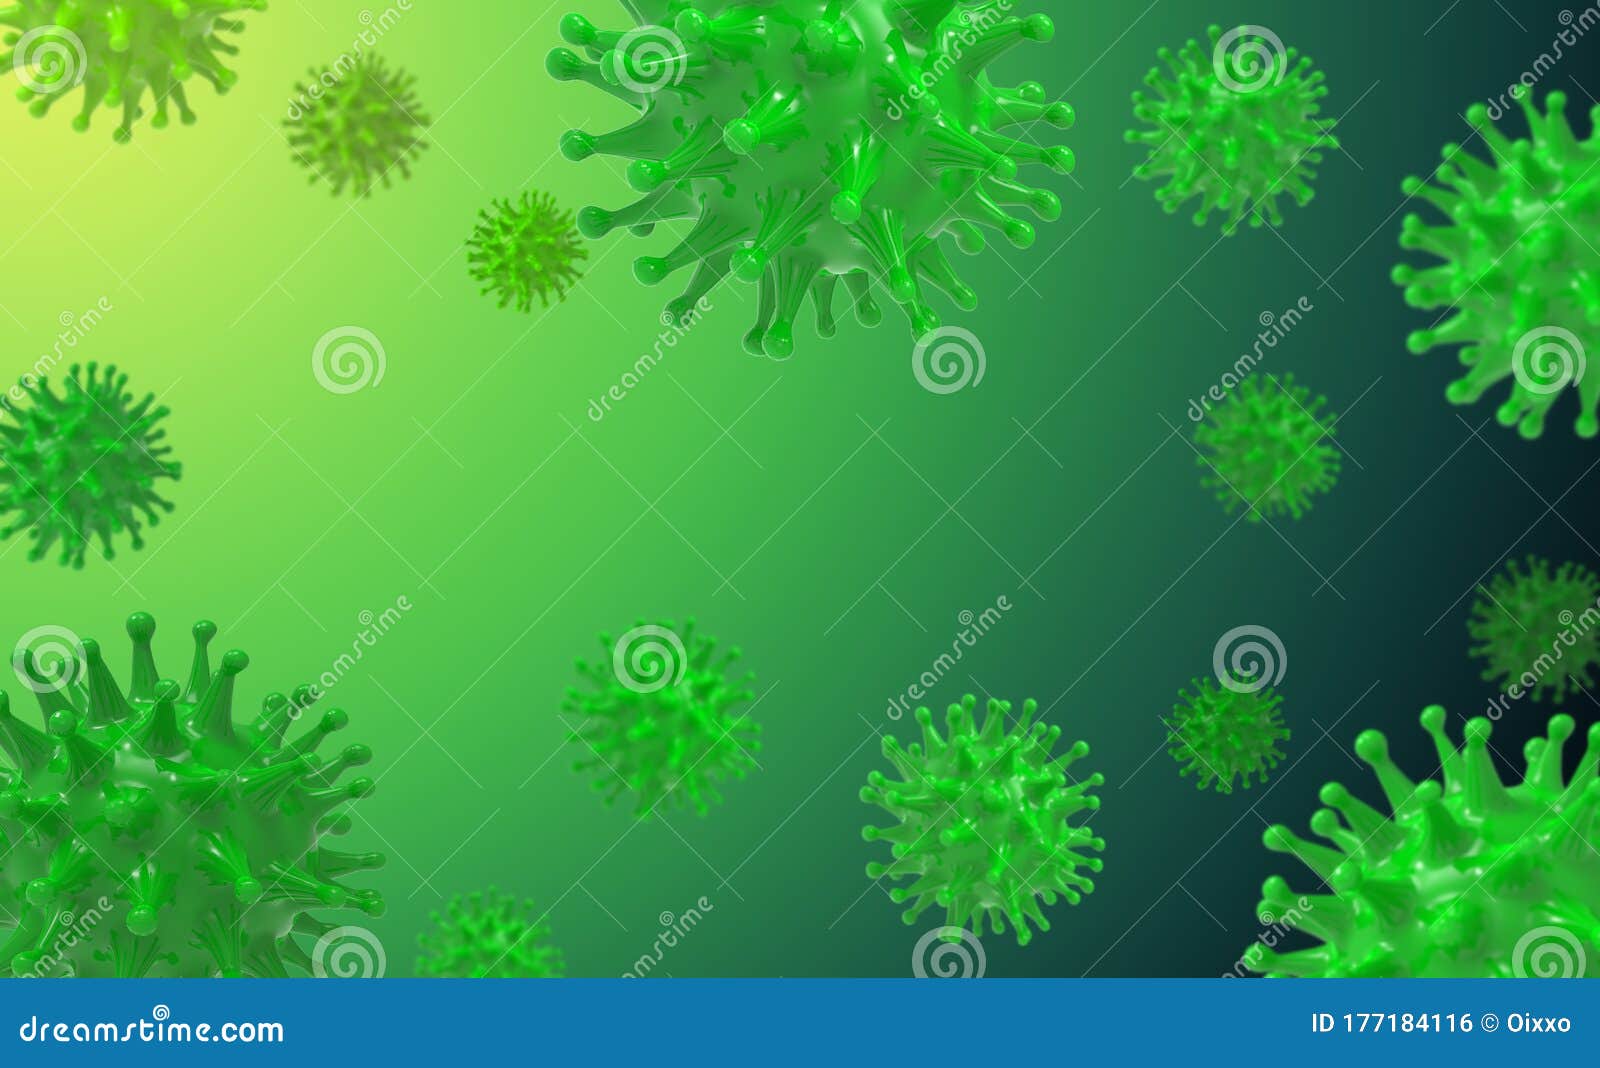 Микроб на зелёном фоне. Вирус зеленый. Зеленые вирусы на прозрачном фоне. Вирус гриппа макет для презентации.